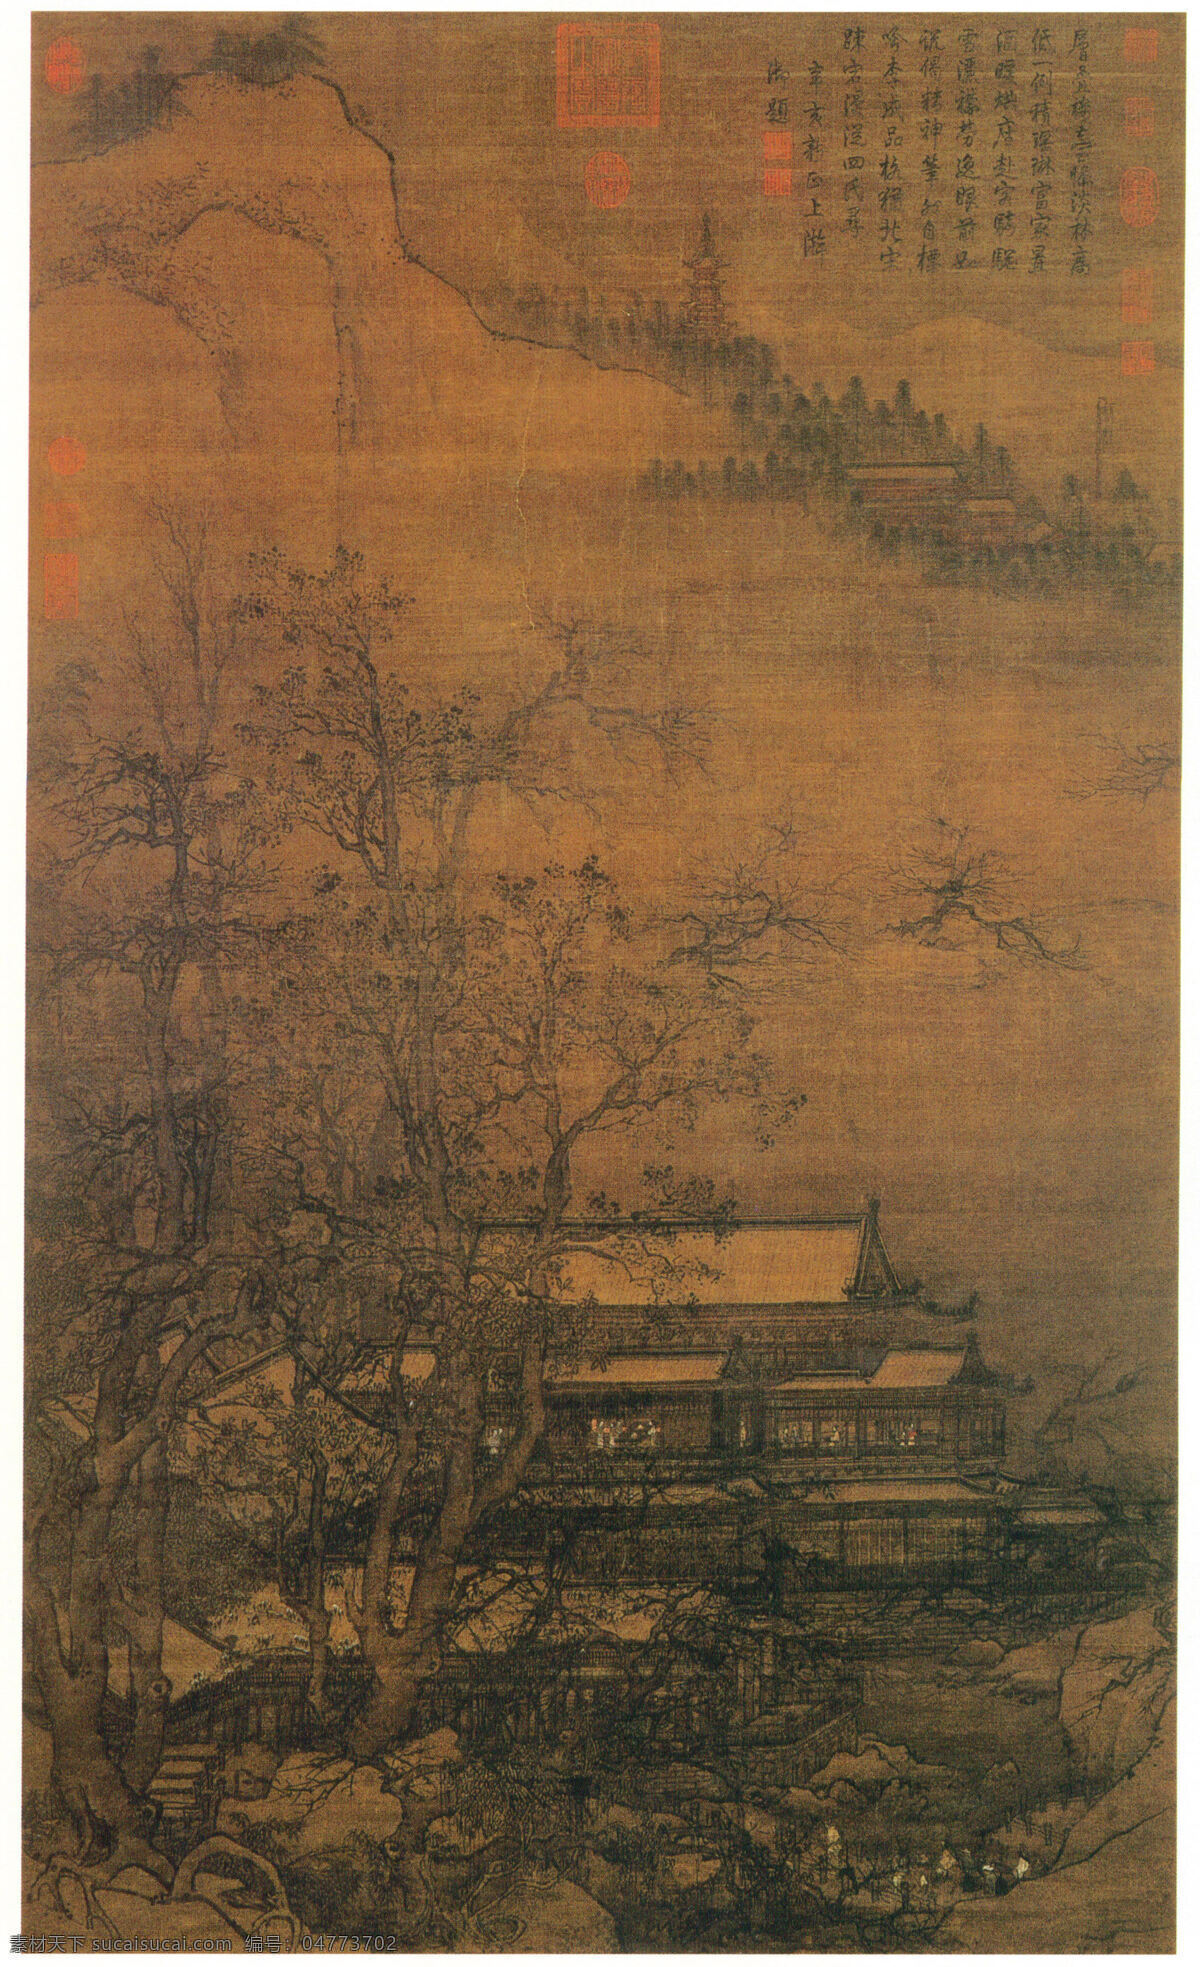 南 宋 寒林楼观图轴 设计素材 山水画篇 中国画篇 书画美术 棕色